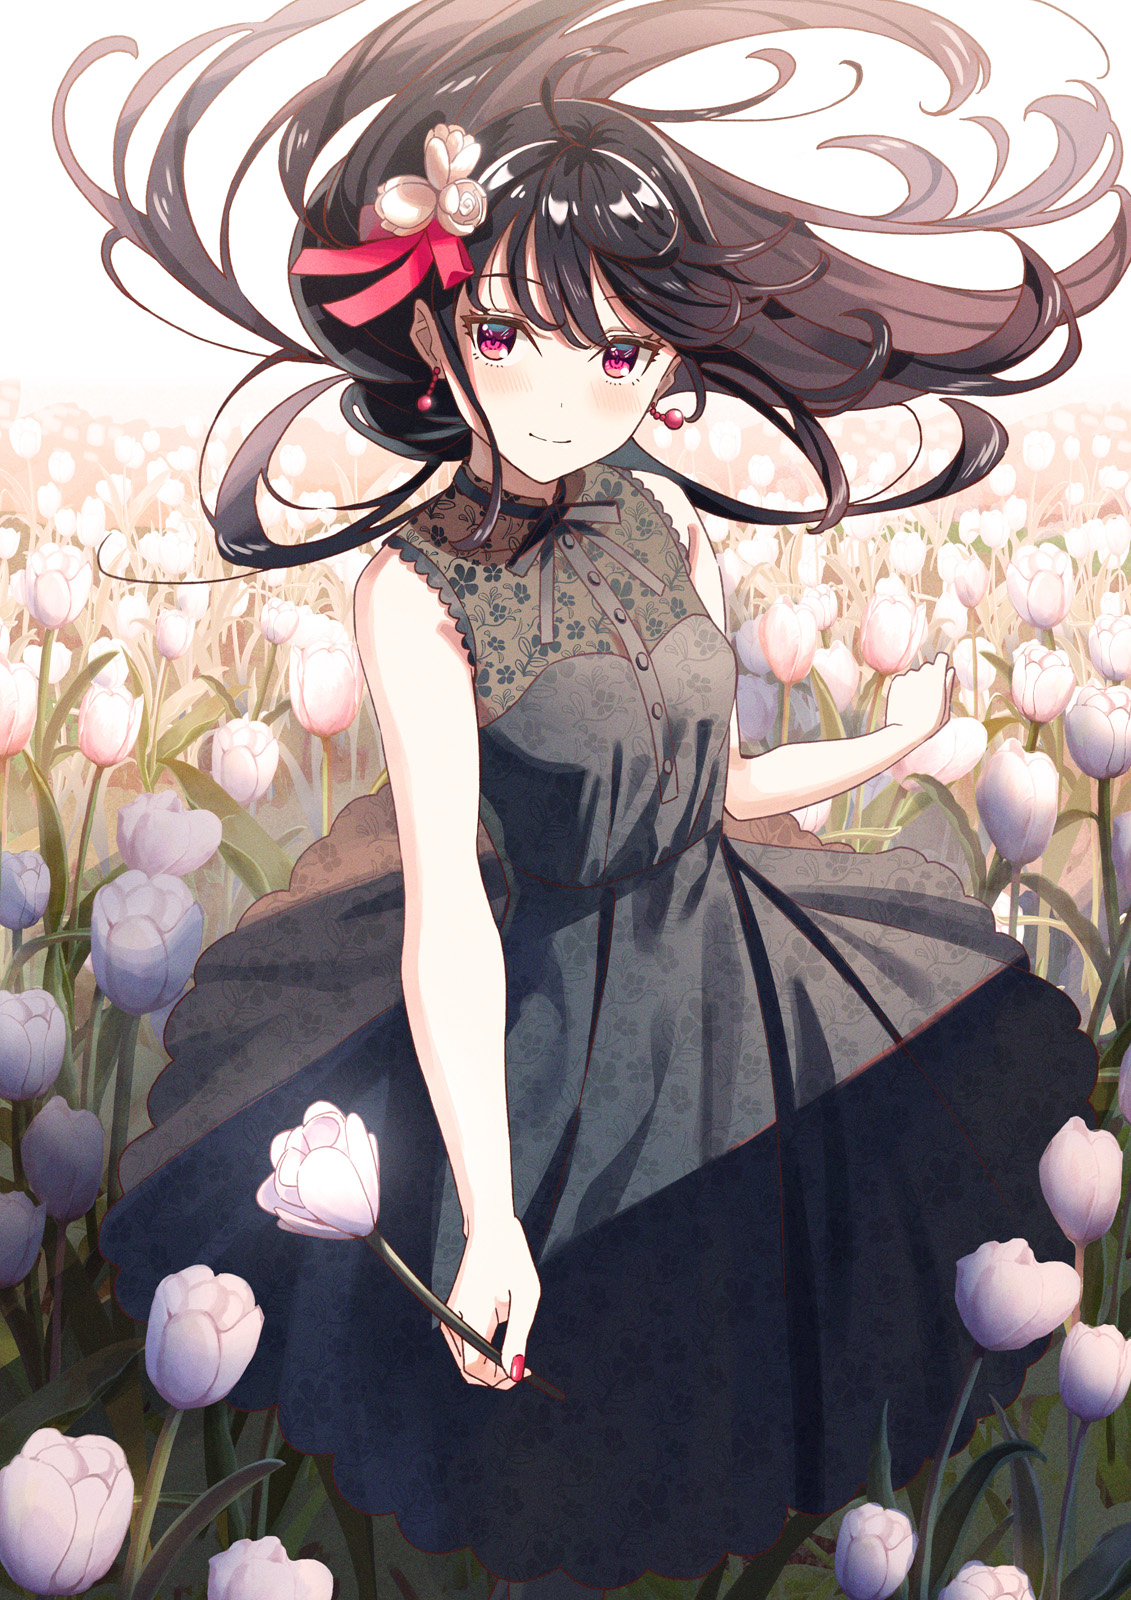 Anime 1131x1600 black dress nail polish ribbon long hair anime artwork flowers dress dark hair purple eyes anime girls Koh RD